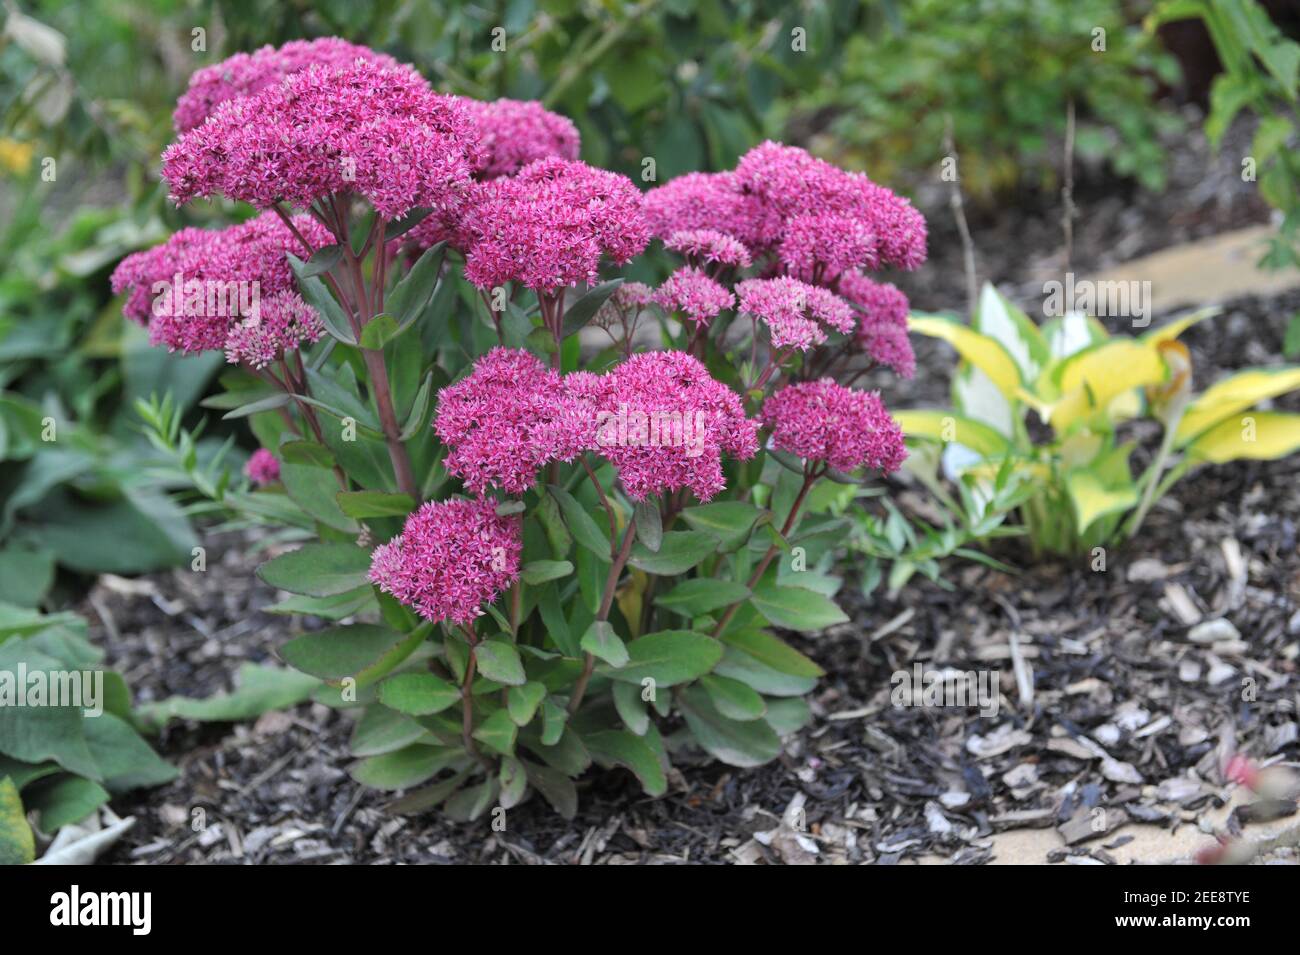 Purple stonecrop (Sedum, Hylotelephium) Mr Goodbud blooms in a garden in September Stock Photo